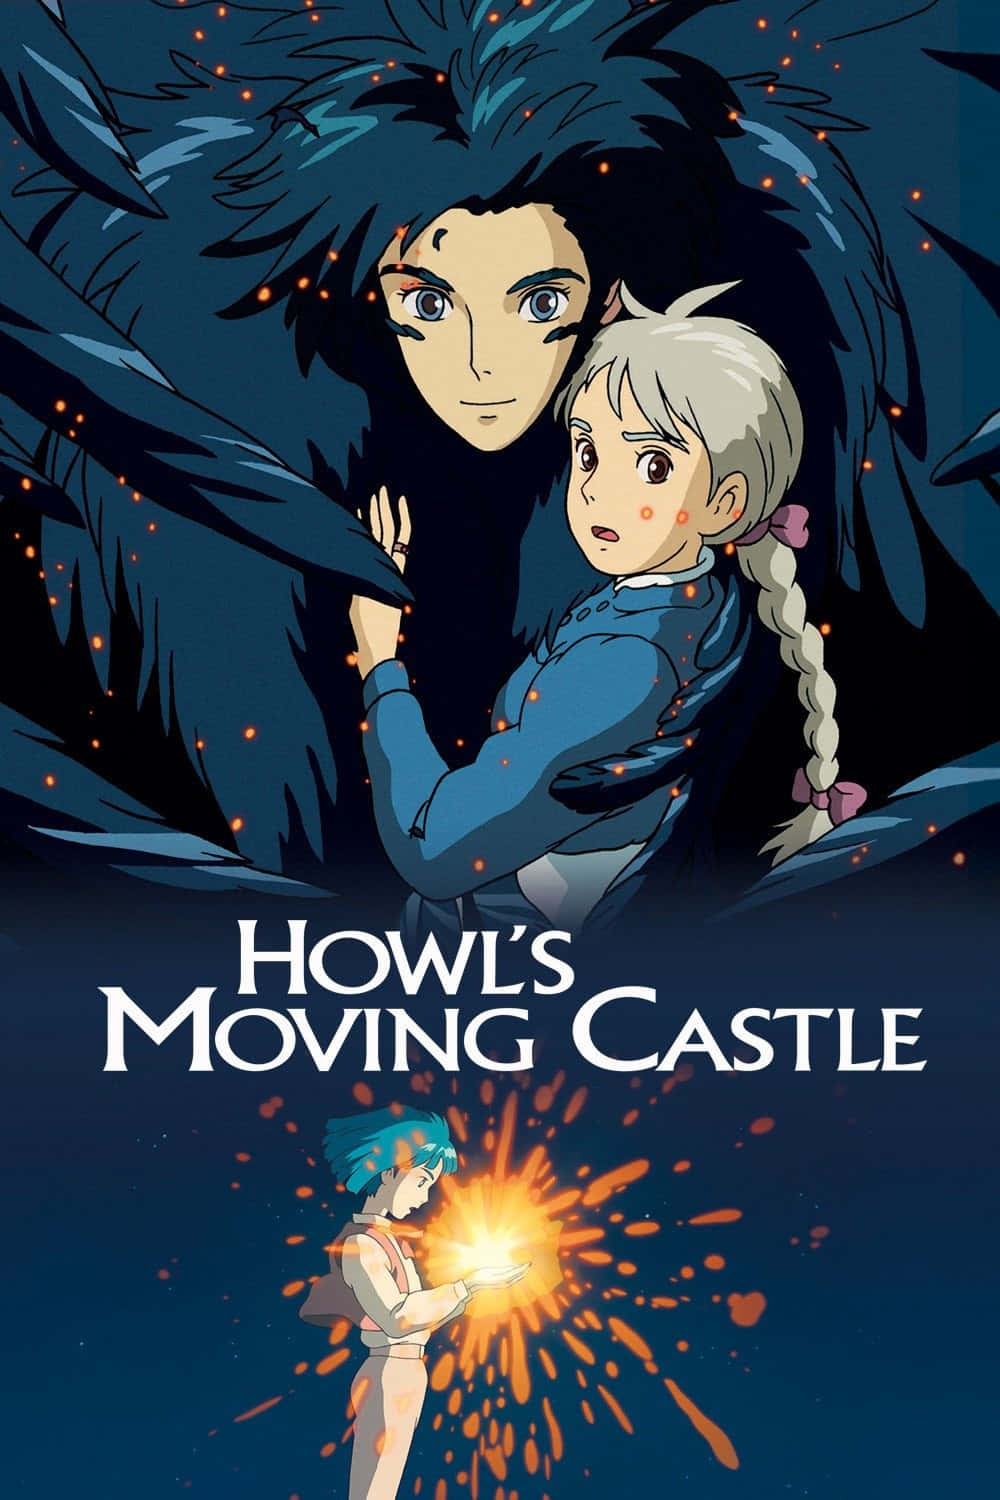 Howl's Moving Castle - Enter the Fantastical